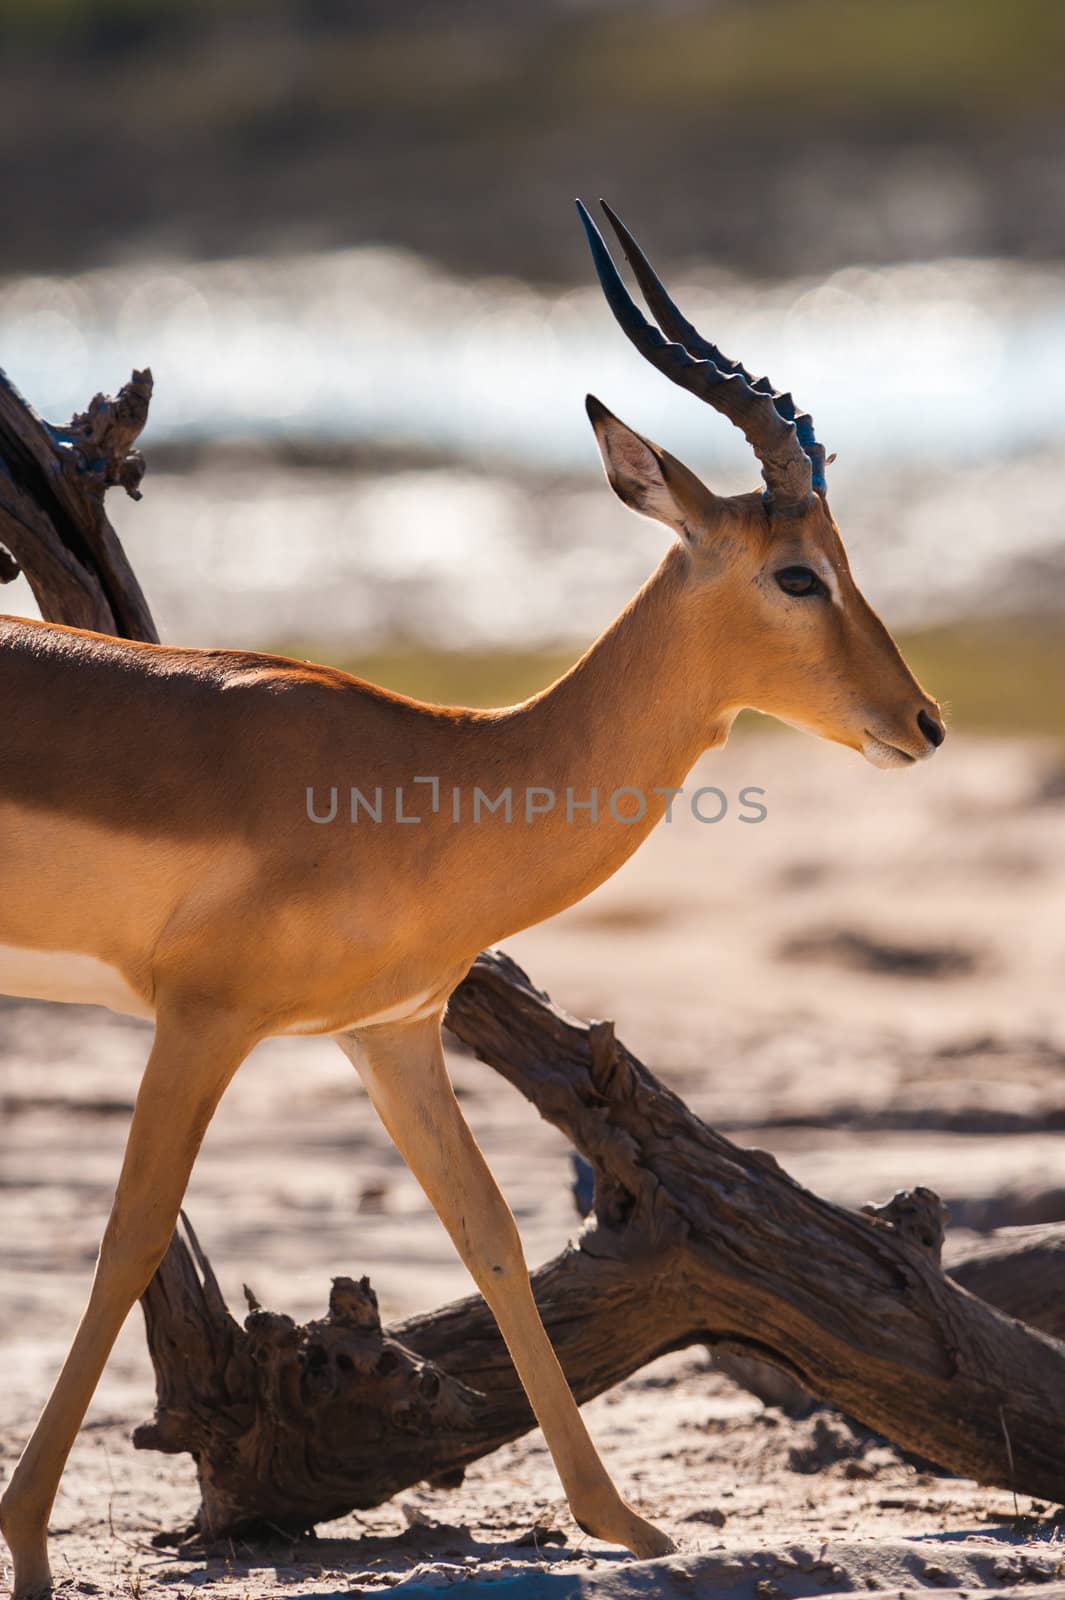 Impala (Aepyceros melampus) walking, Chobe National Park, Botswana